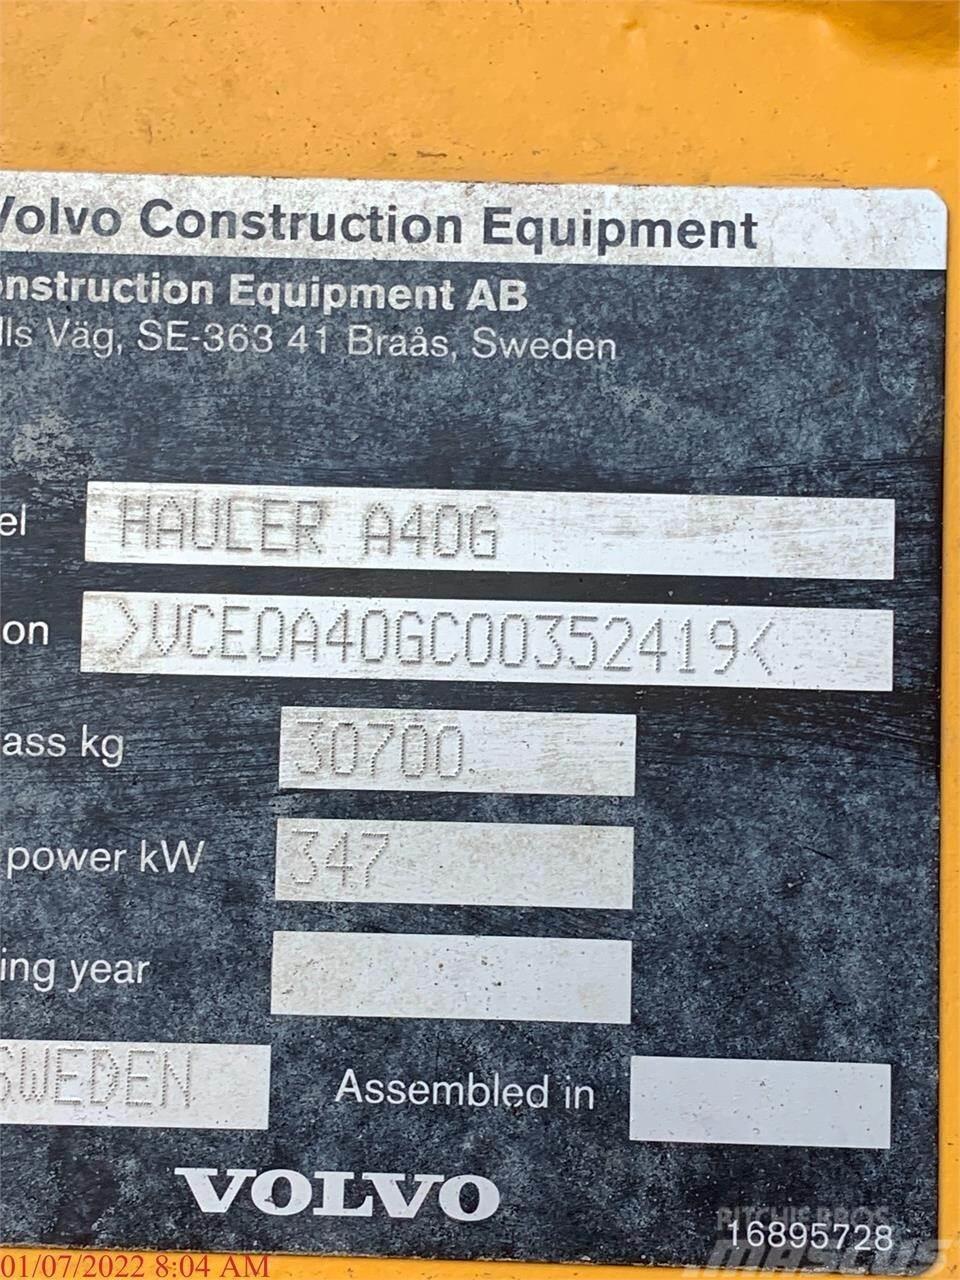 Volvo A40G Belden kirma kaya kamyonu